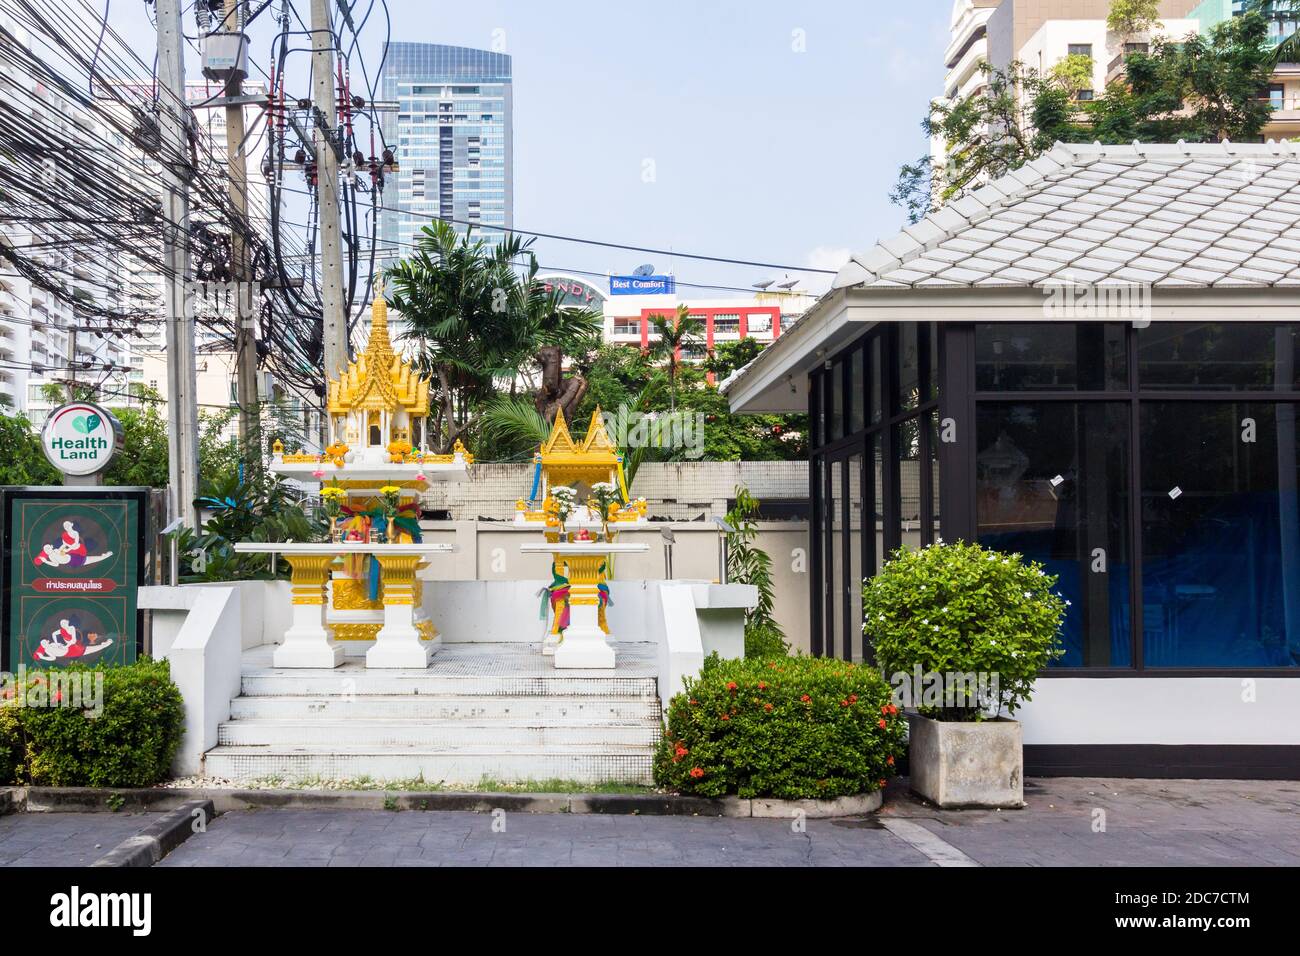 Une maison d'esprit thaïlandaise est un point de vue commun dans les rues de Thaïlande Banque D'Images